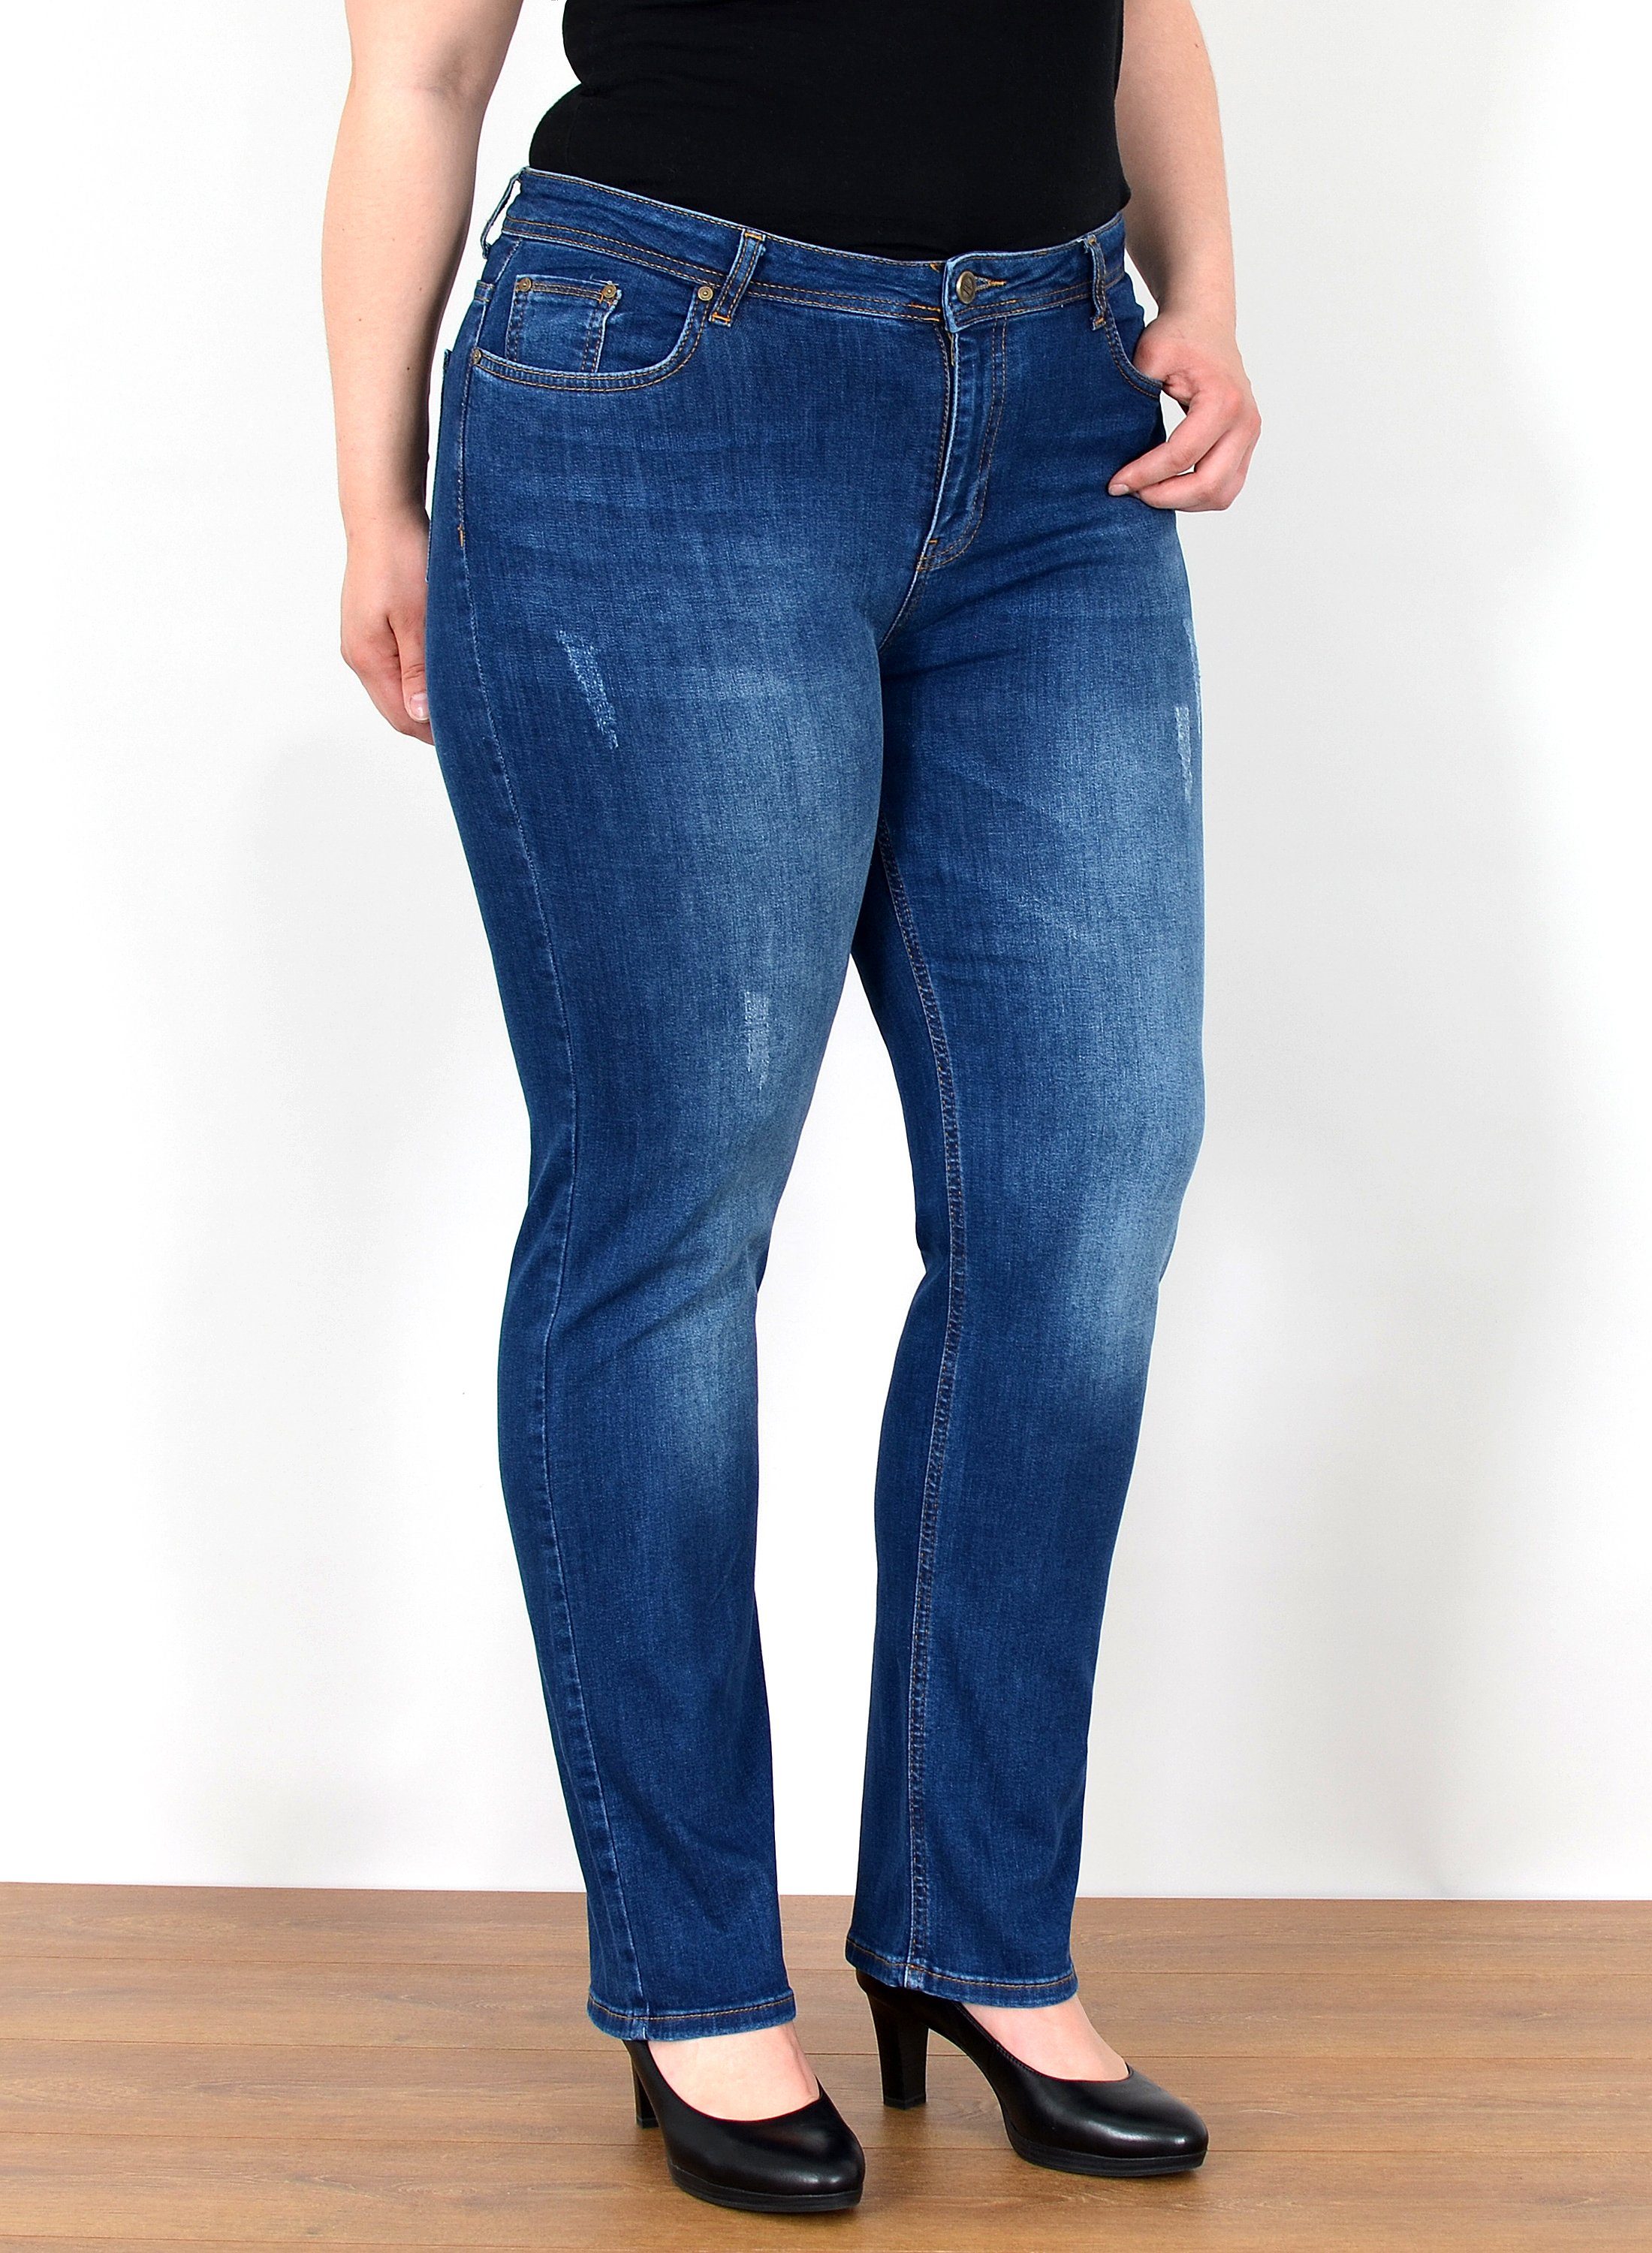 ESRA Straight-Jeans FG4 Straight Джинсы Damen High Waist Джинсы Stretch Übergröße Plus Size